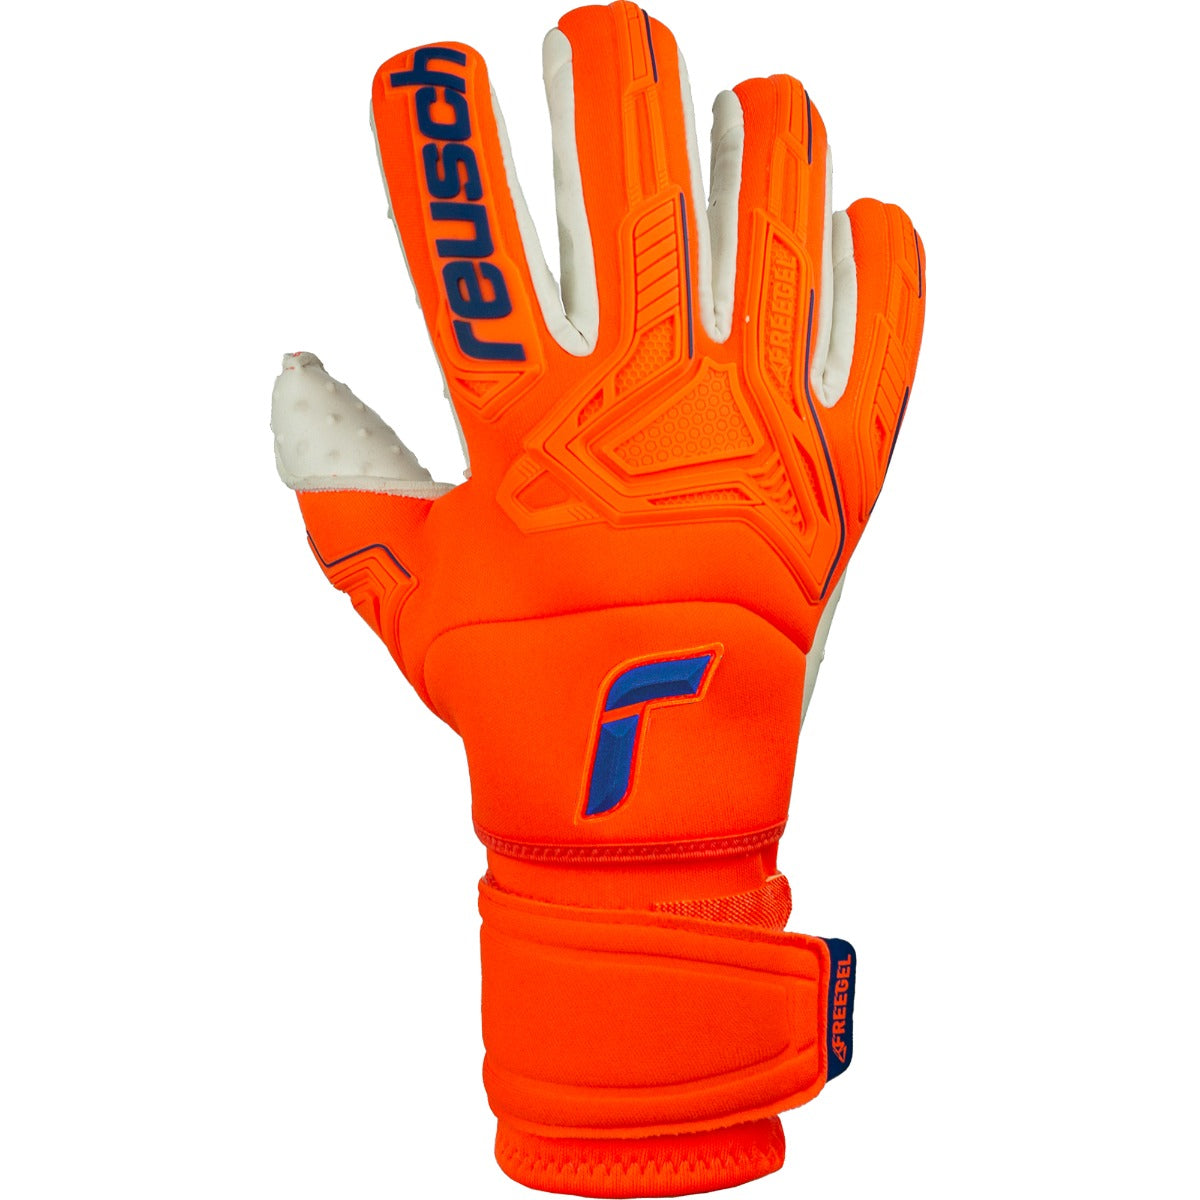 Reusch Attrakt FS Freegel Speedbump Ortho-Tec Goalkeeper Glove - Orange-Blue (Single - Outer)